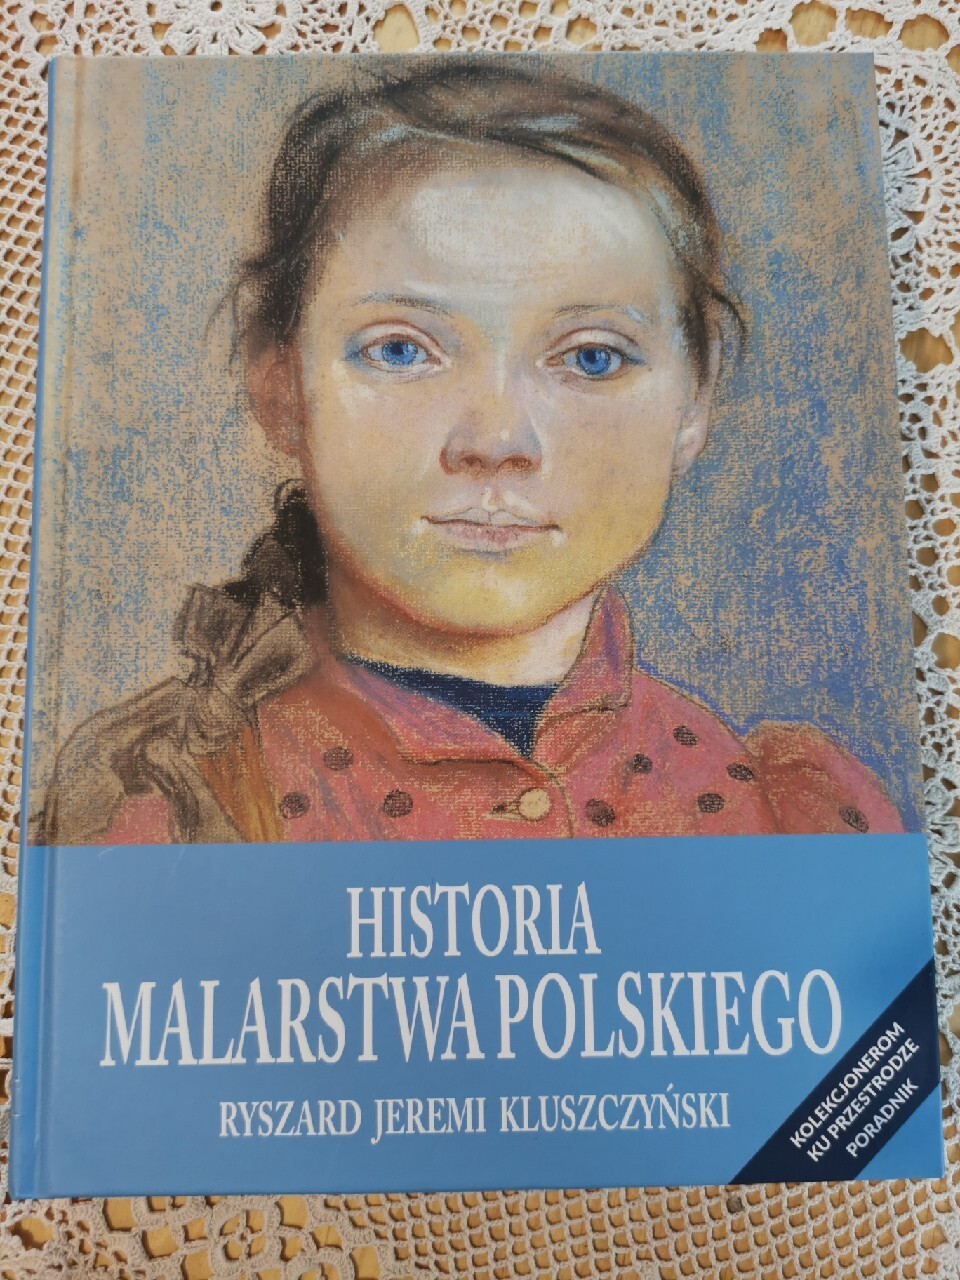 Historia malarstwa polskiego. Kluszczyński. Nowa. | Mińsk Mazowiecki ...